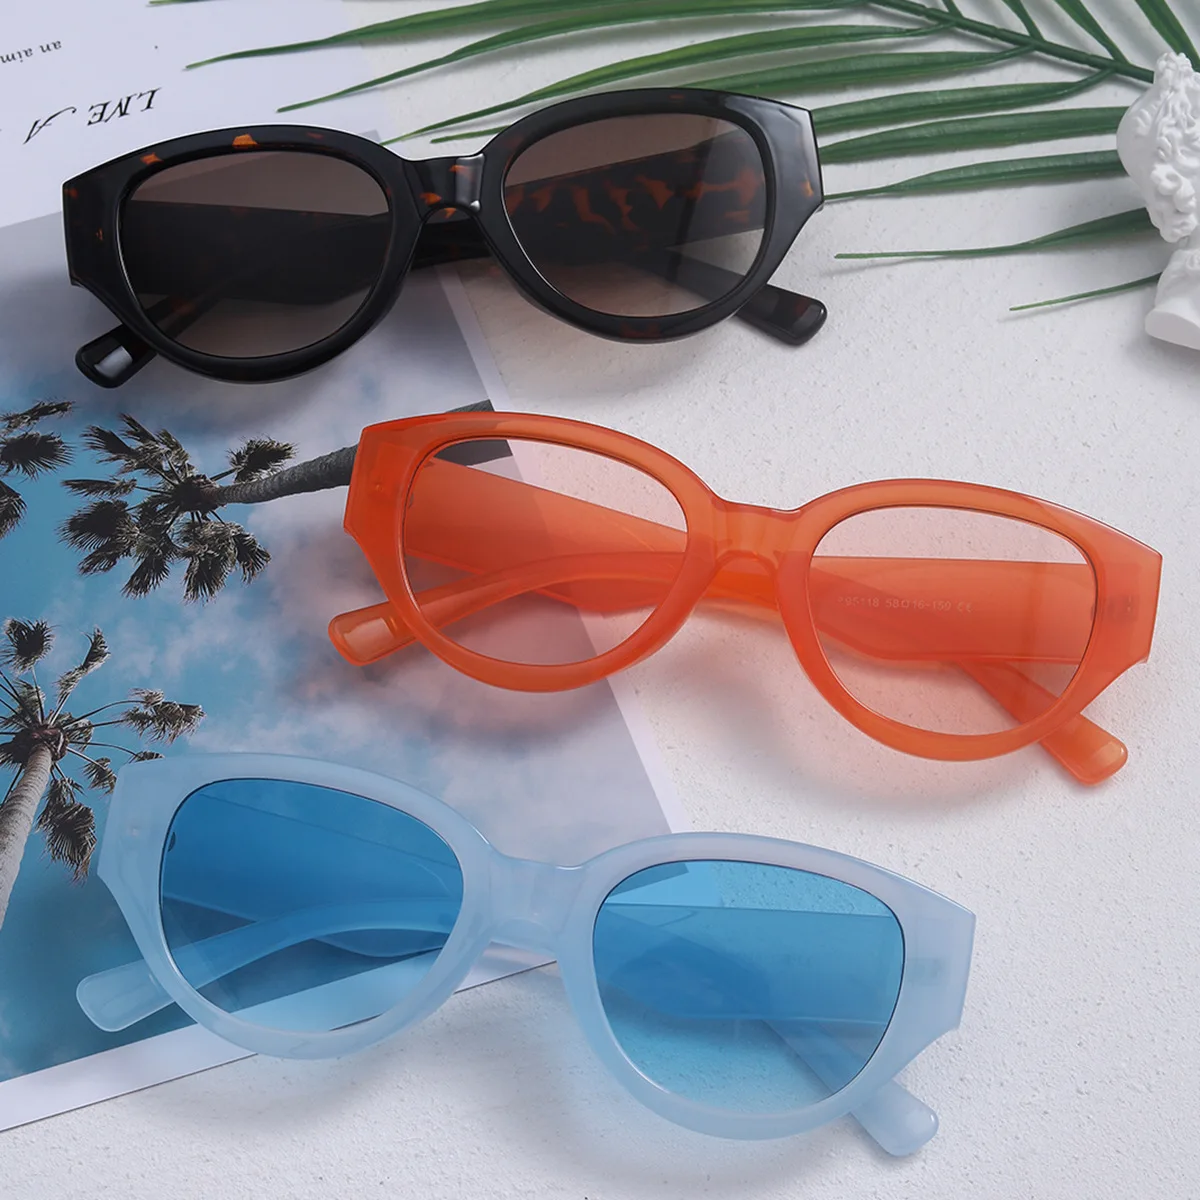 

Роскошные Дизайнерские брендовые маленькие рамки солнцезащитные очки «кошачий глаз» женские модные солнцезащитные очки в стиле ретро с популярные экскурсии очки, подходят для вождения, солнцезащитные очки стильная женская обувь UV400